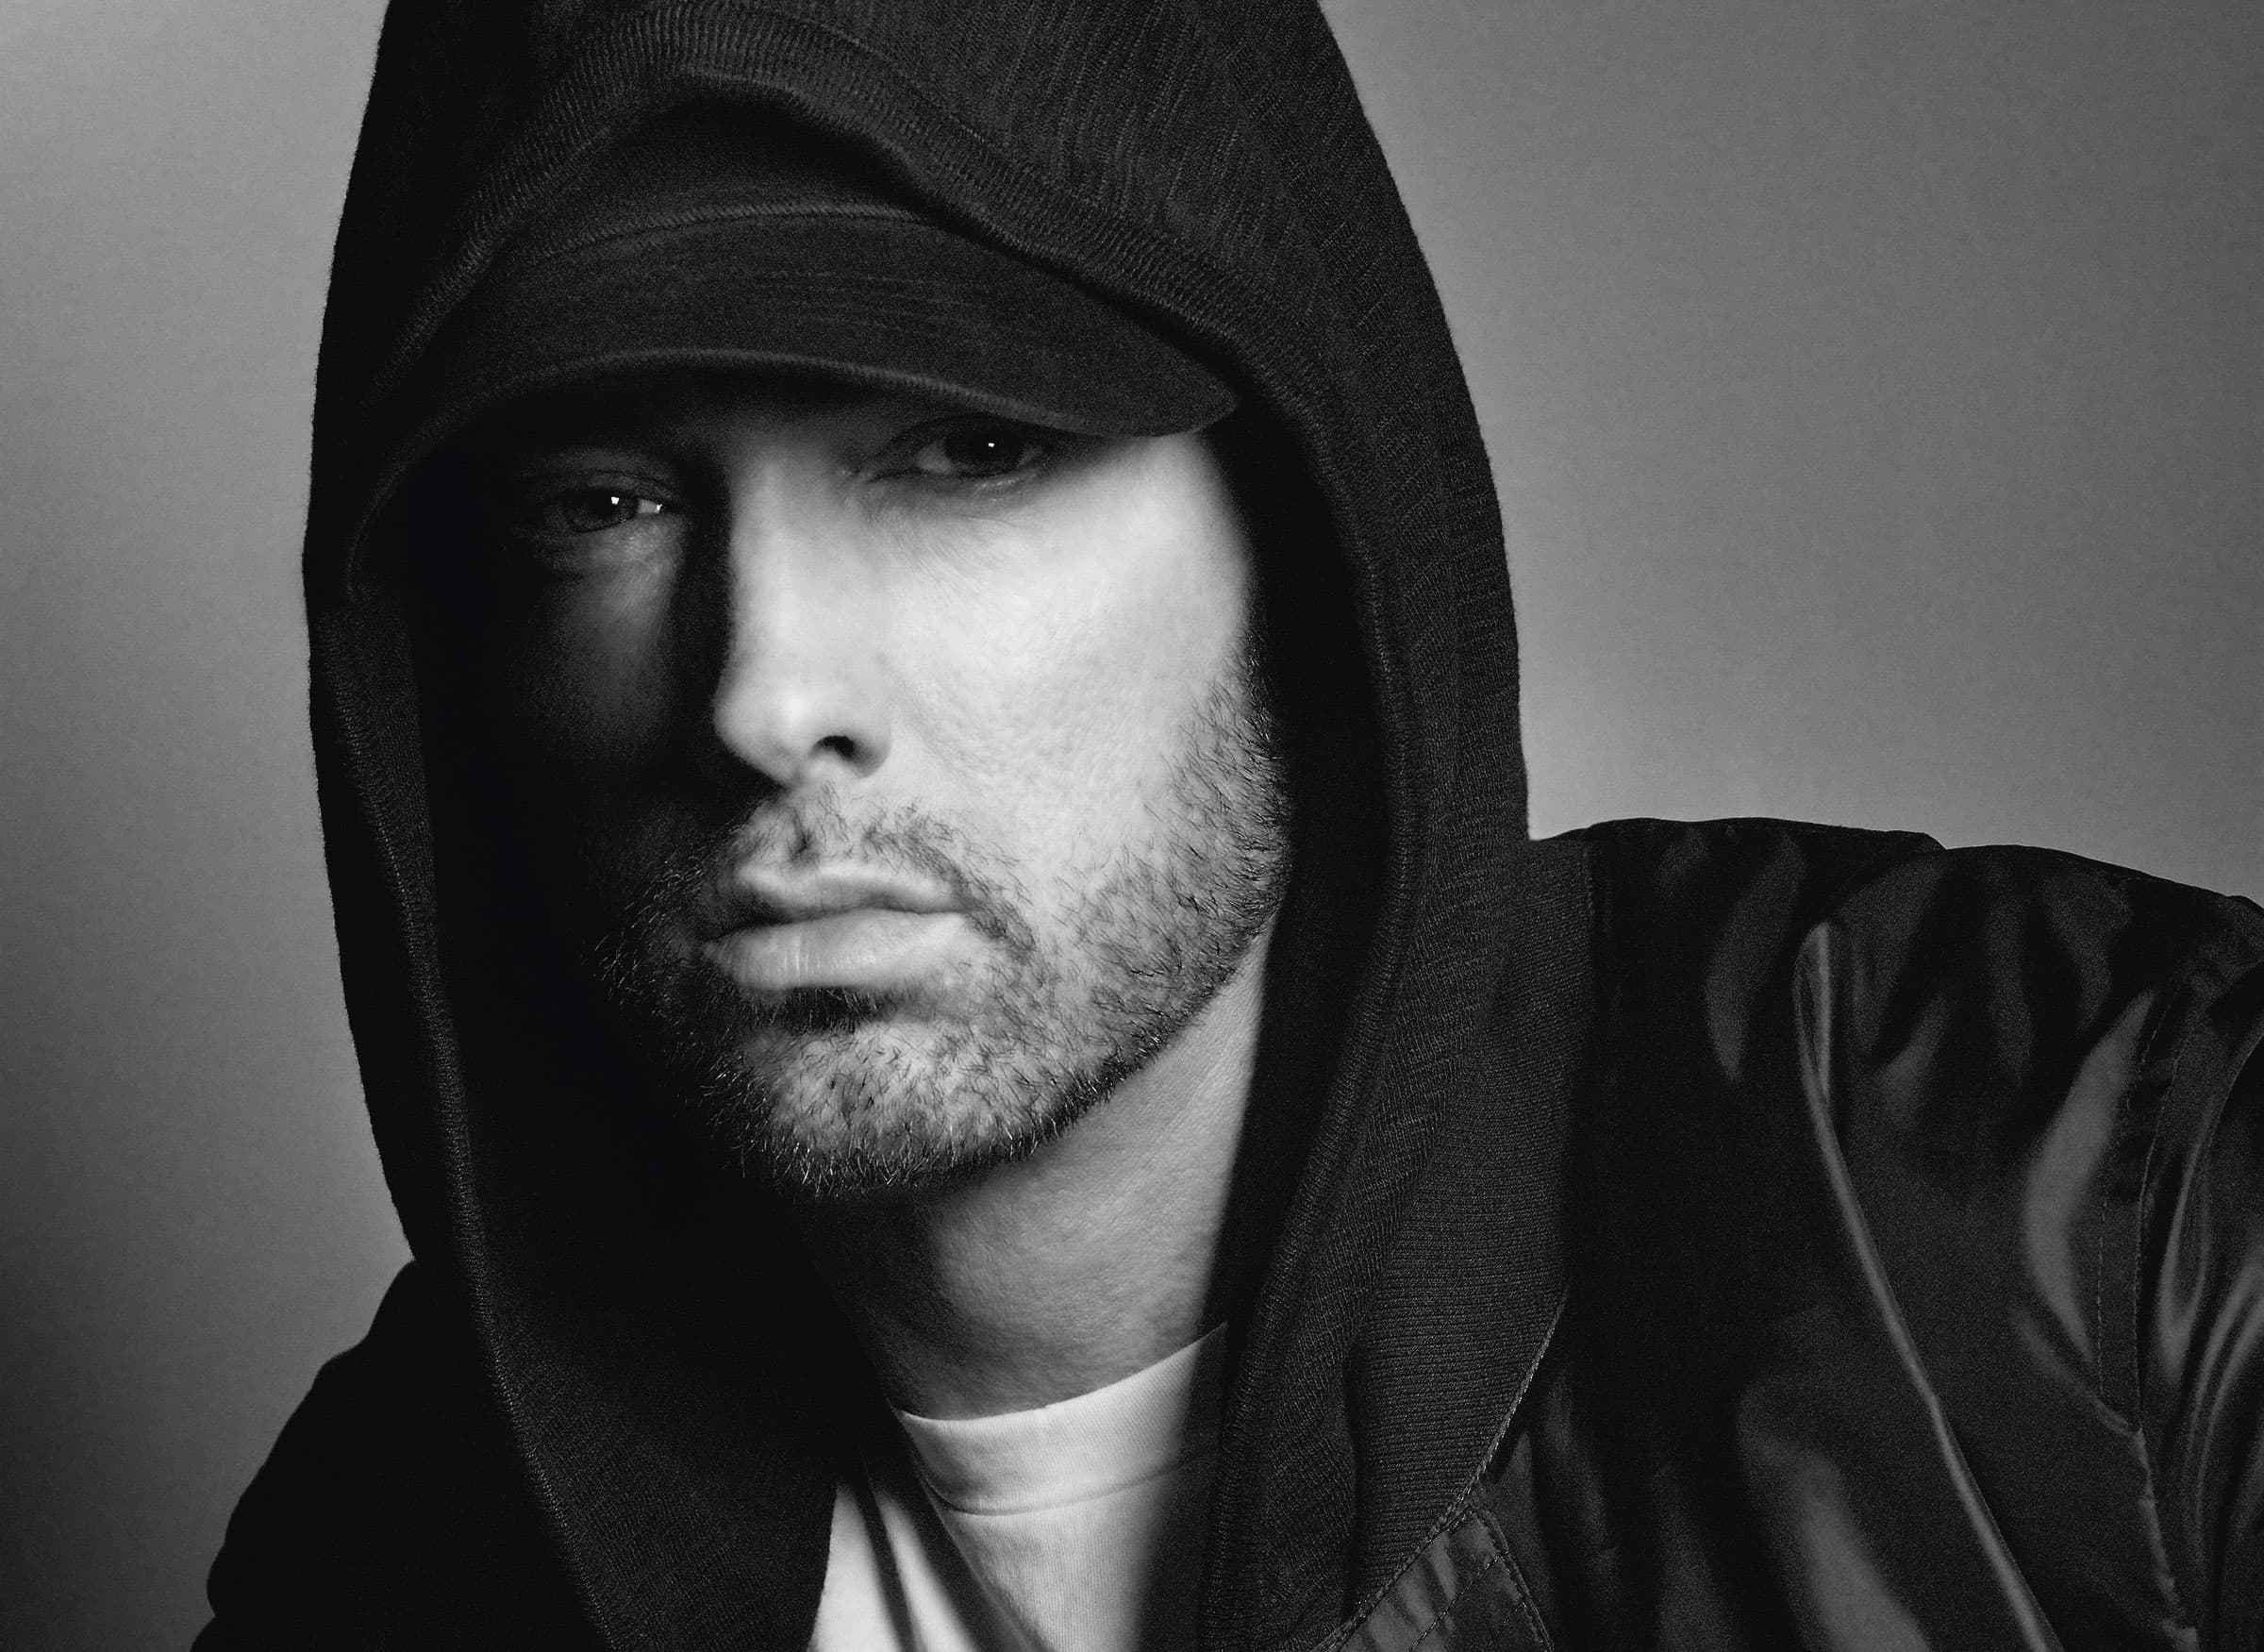 Eminem 2019 , HD Wallpaper & Backgrounds